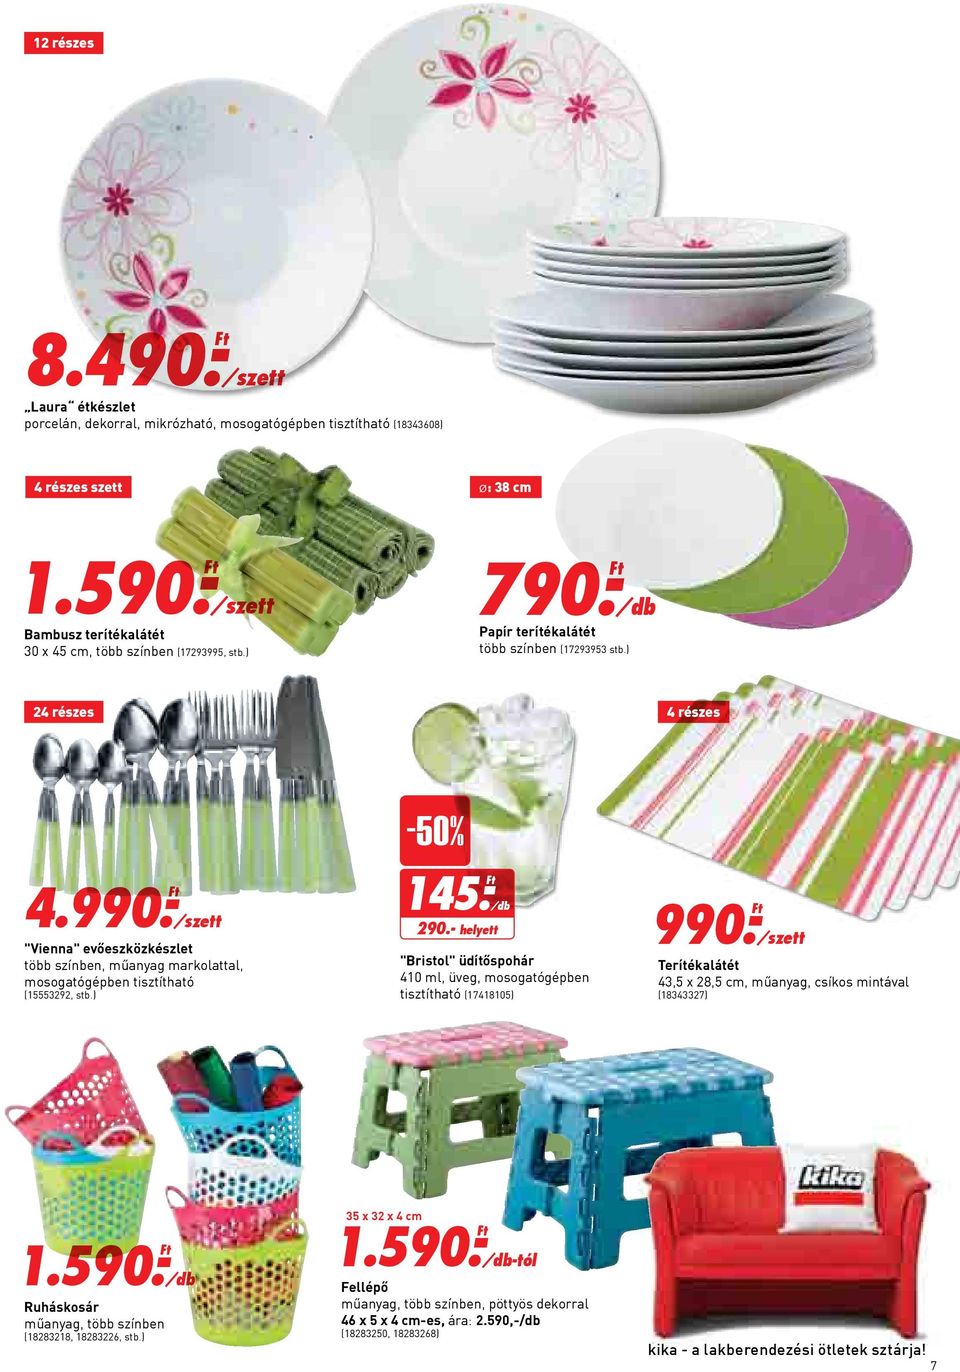 - Ft "Vienna" evőeszközkészlet több színben, műanyag markolattal, mosogatógépben tisztítható (15553292, stb.) -50% 145.- Ft 290.